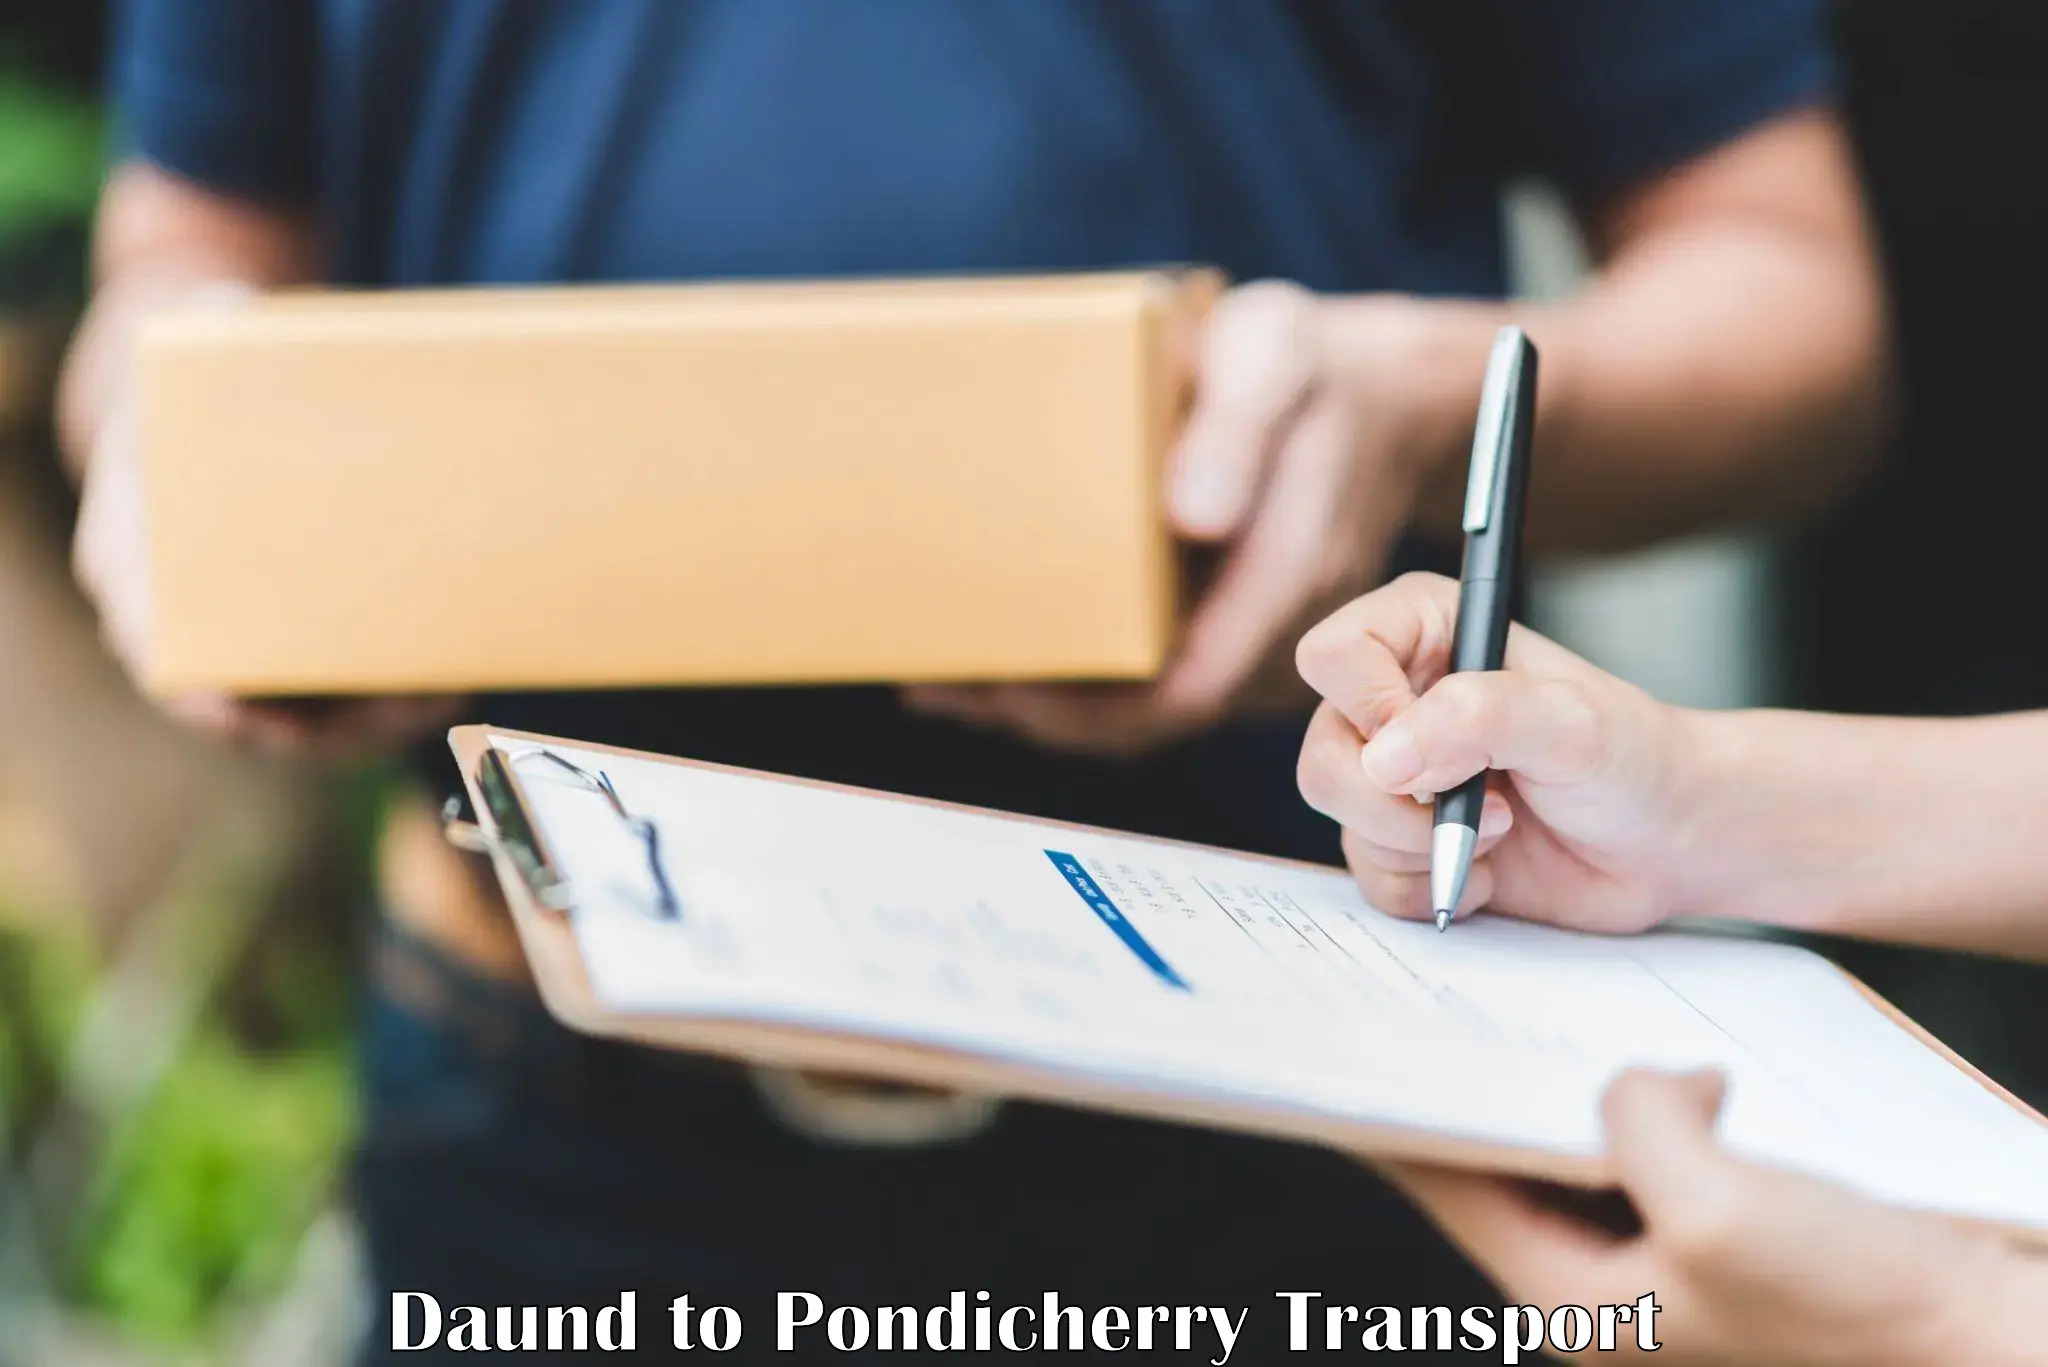 Online transport service Daund to Pondicherry